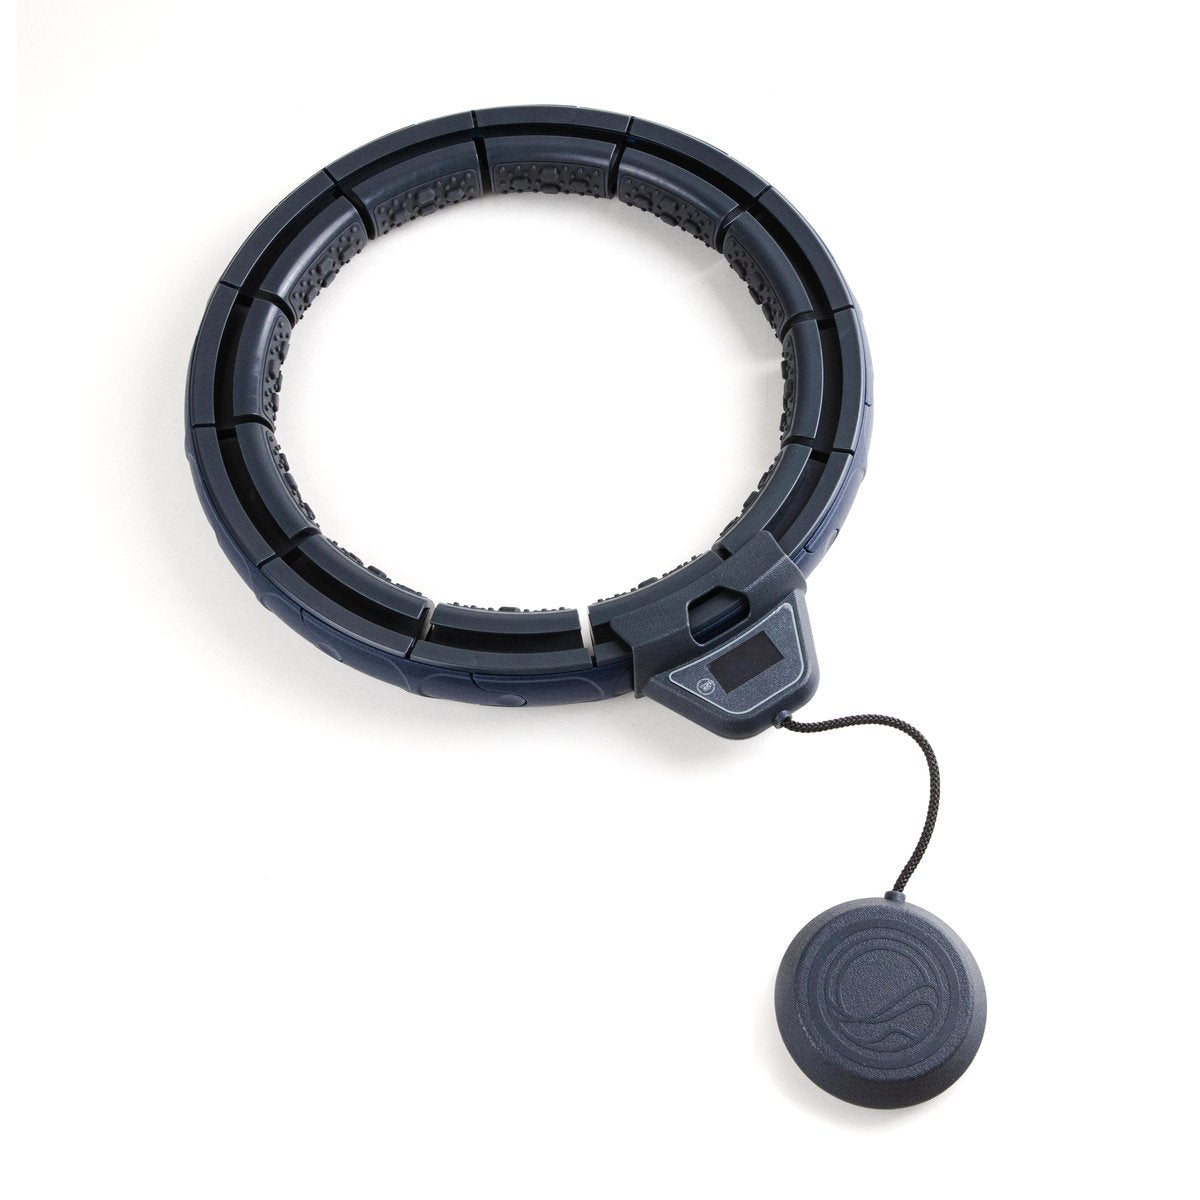 Motus Orbit+ Weight-bearing smart fat burning hula hoop